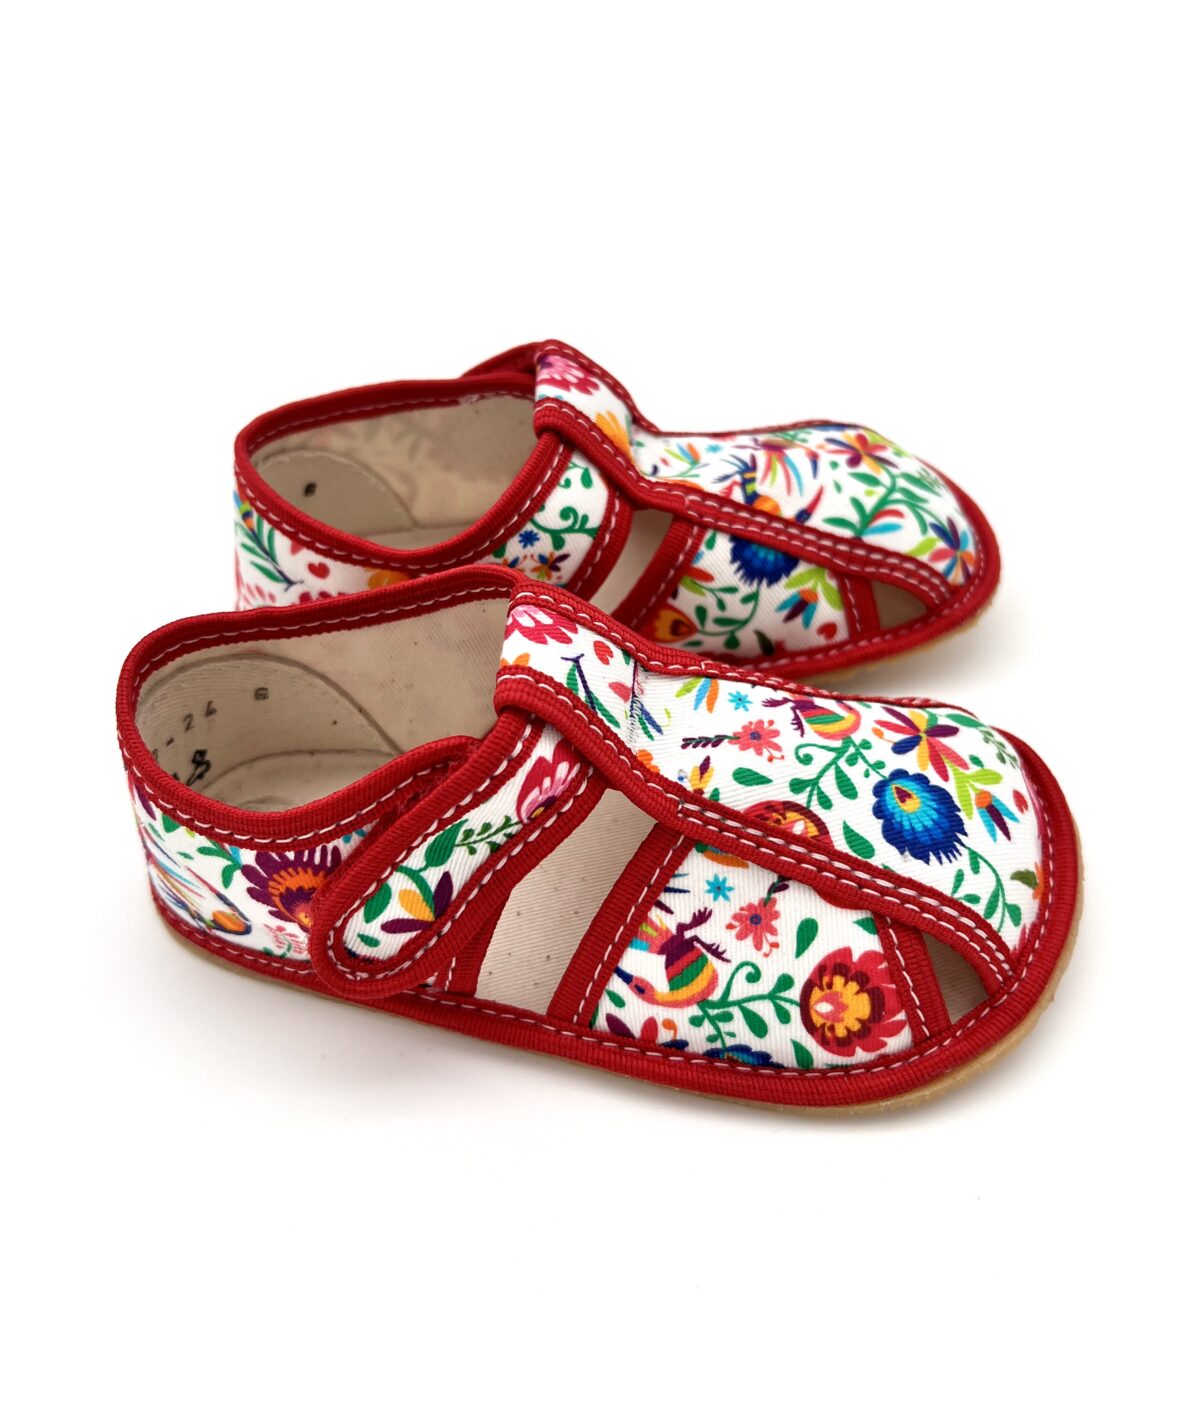 Baby Bare sisejalatsid White Folklore Laste barefoot jalatsid - HellyK - Kvaliteetsed lasteriided, villariided, barefoot jalatsid